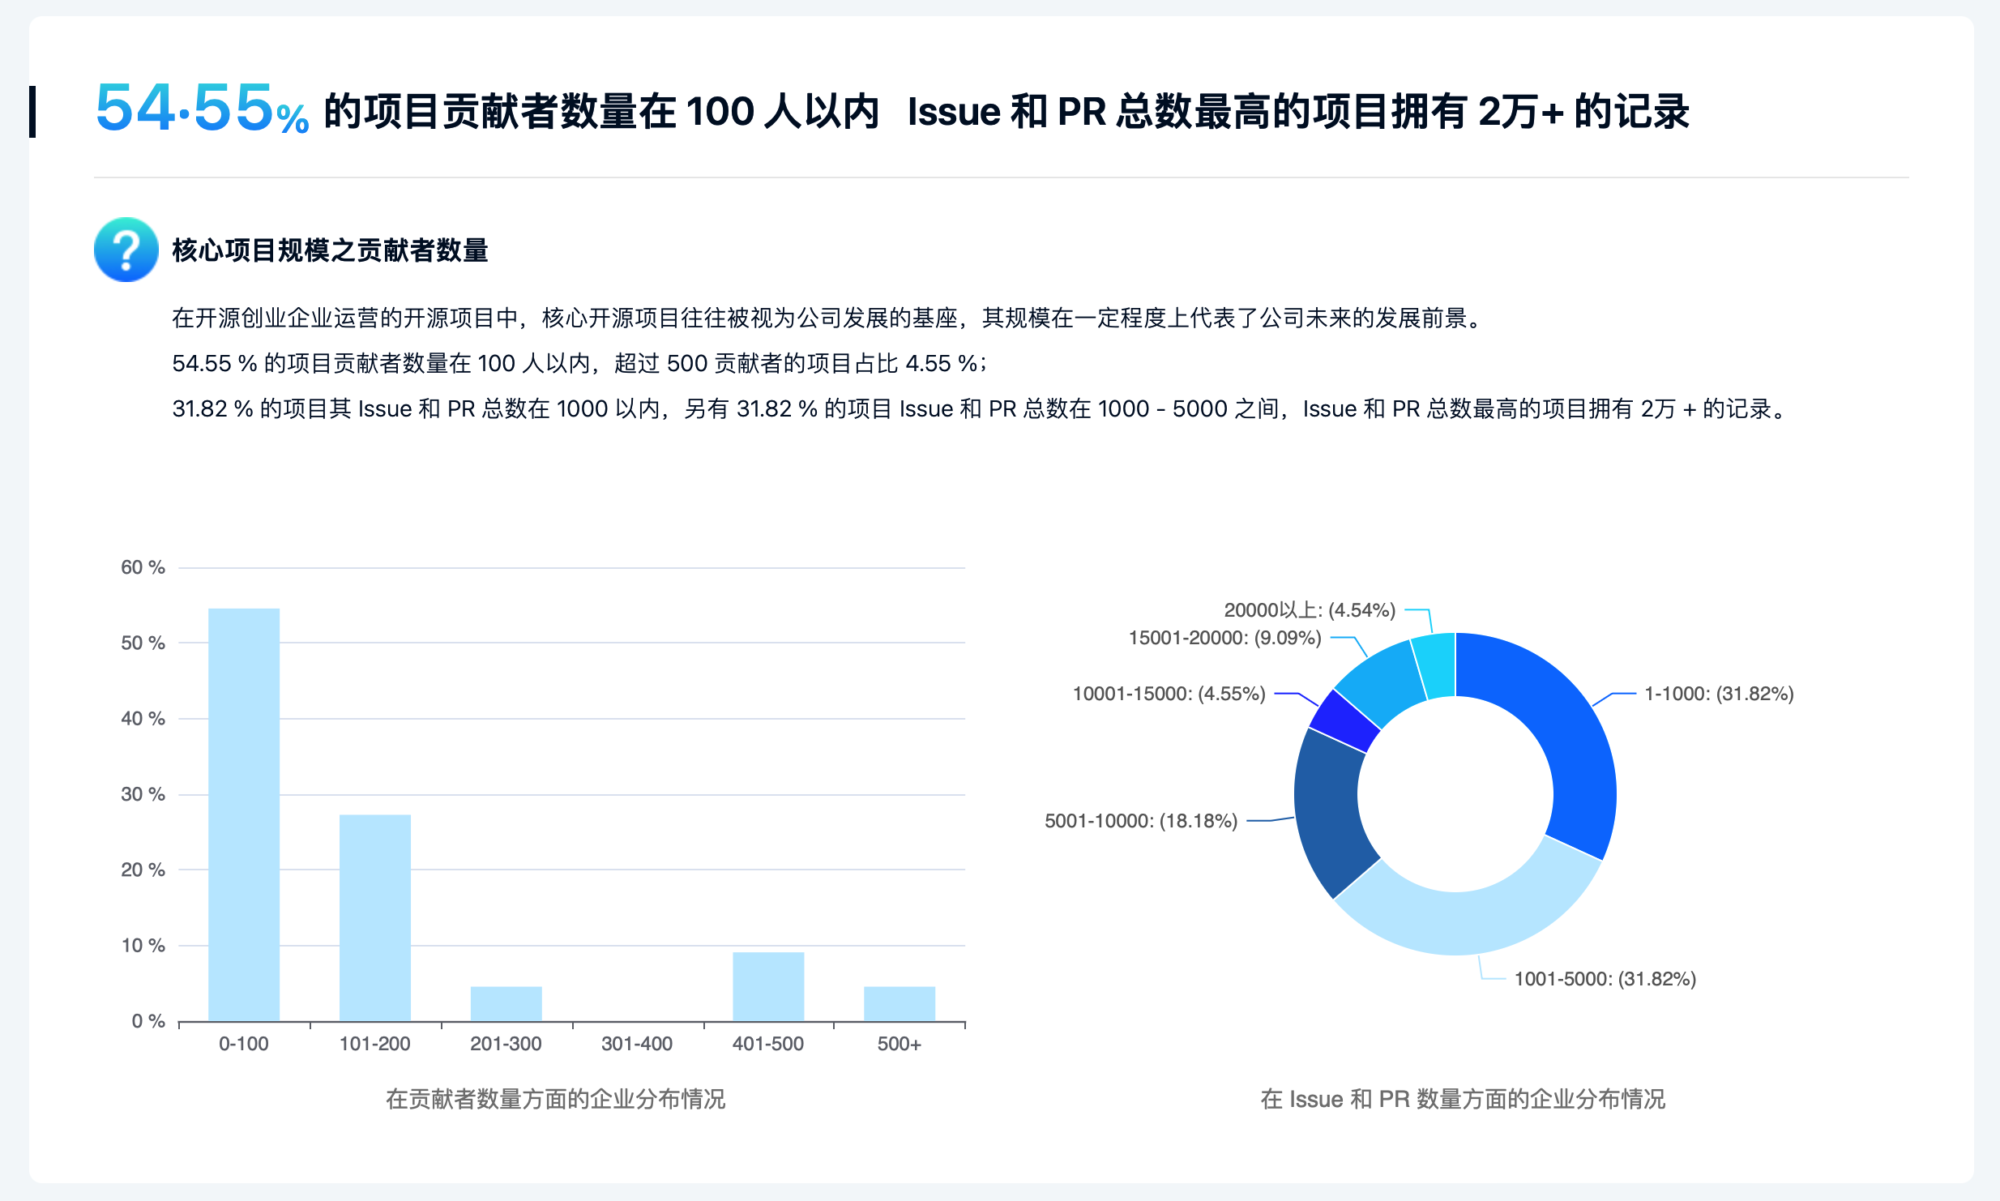 《2022 中国开源开发者报告》正式发布！-Gitee 官方博客